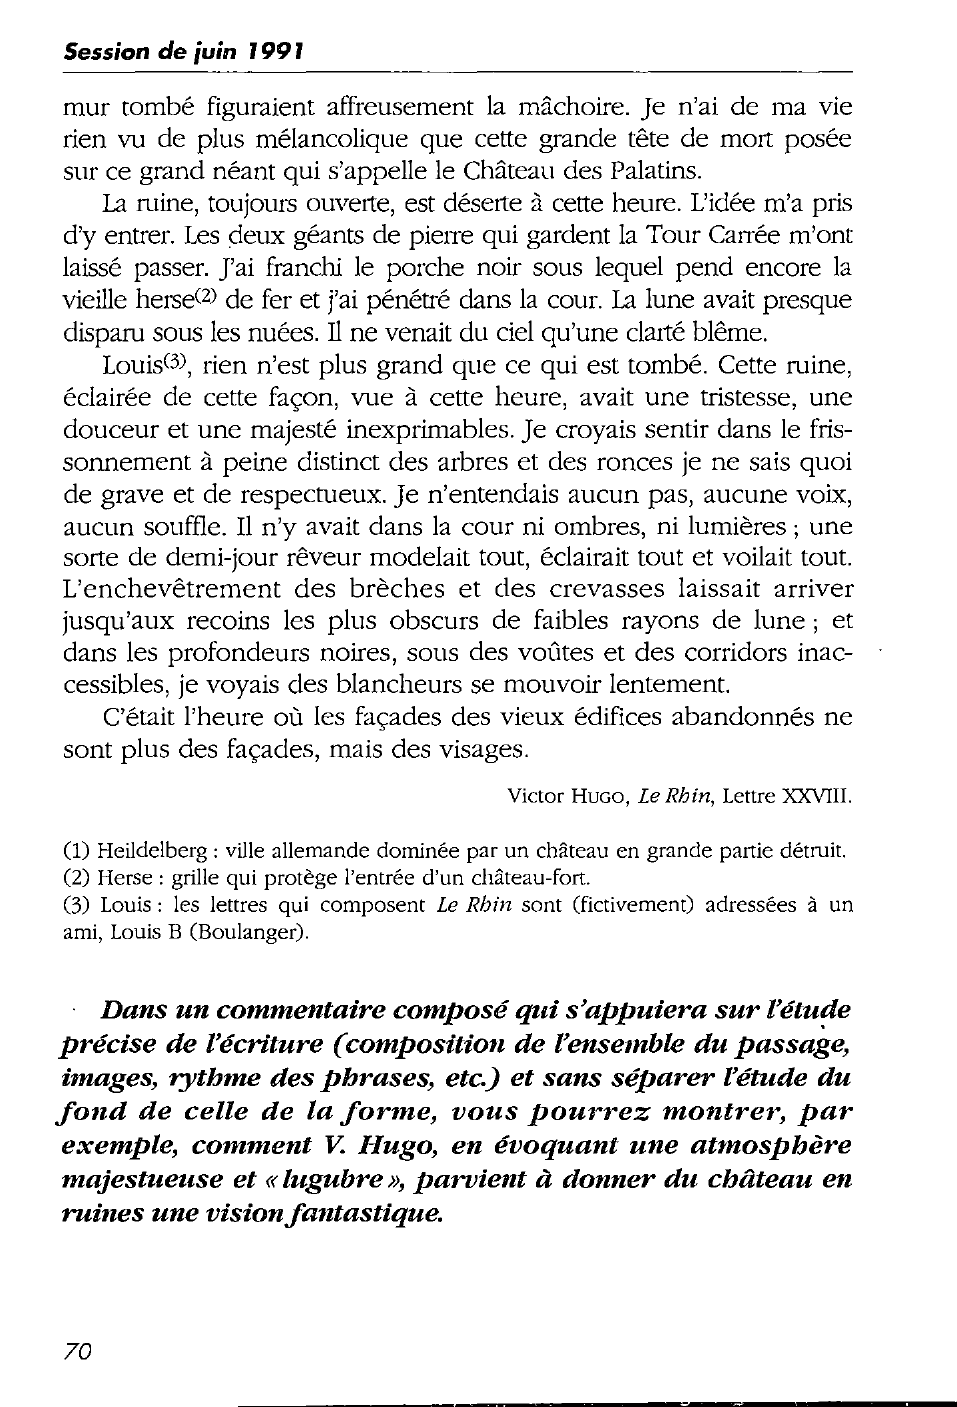 Prévisualisation du document Victor Hugo, Le Rhin, Lettre XXVIII - commentaire composé